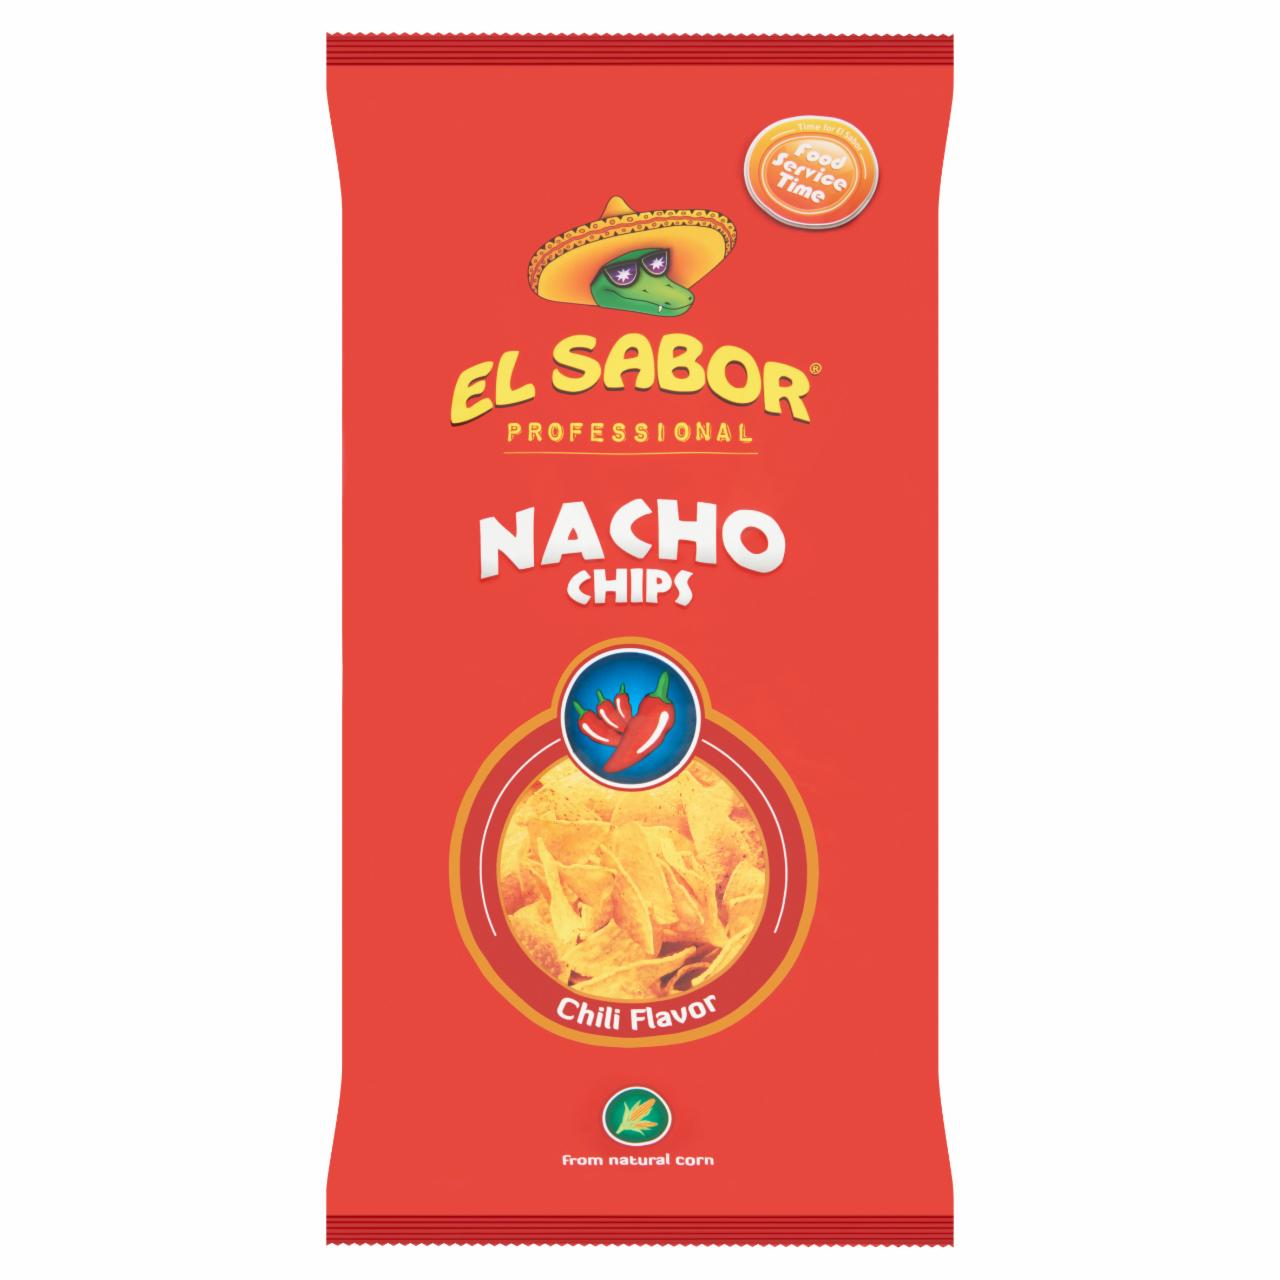 Képek - El Sabor nacho chips chili ízesítéssel 500 g